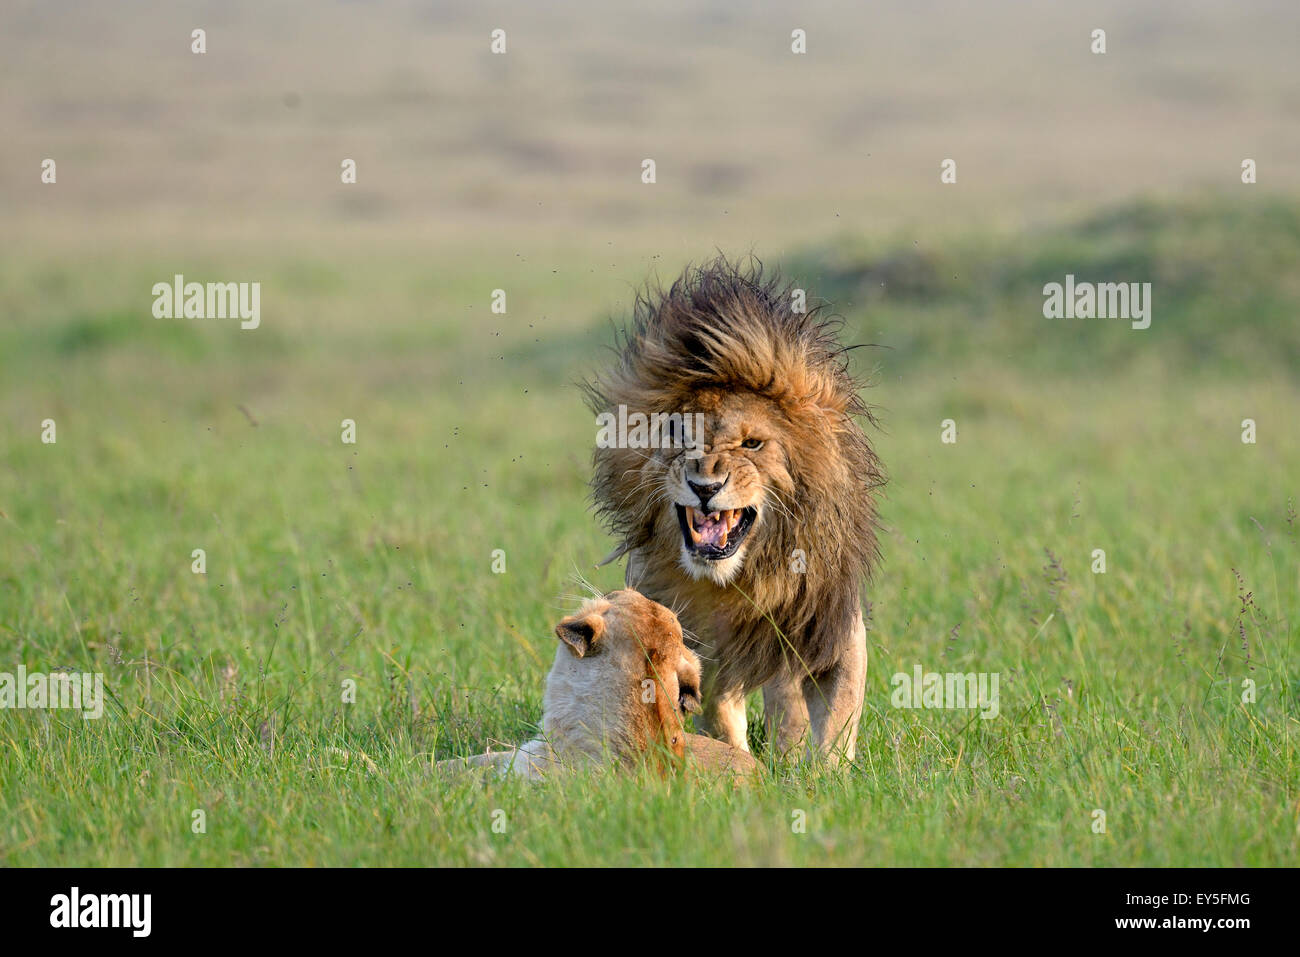 Löwen in der Savanne - Masai Mara Kenia Paarung Stockfoto